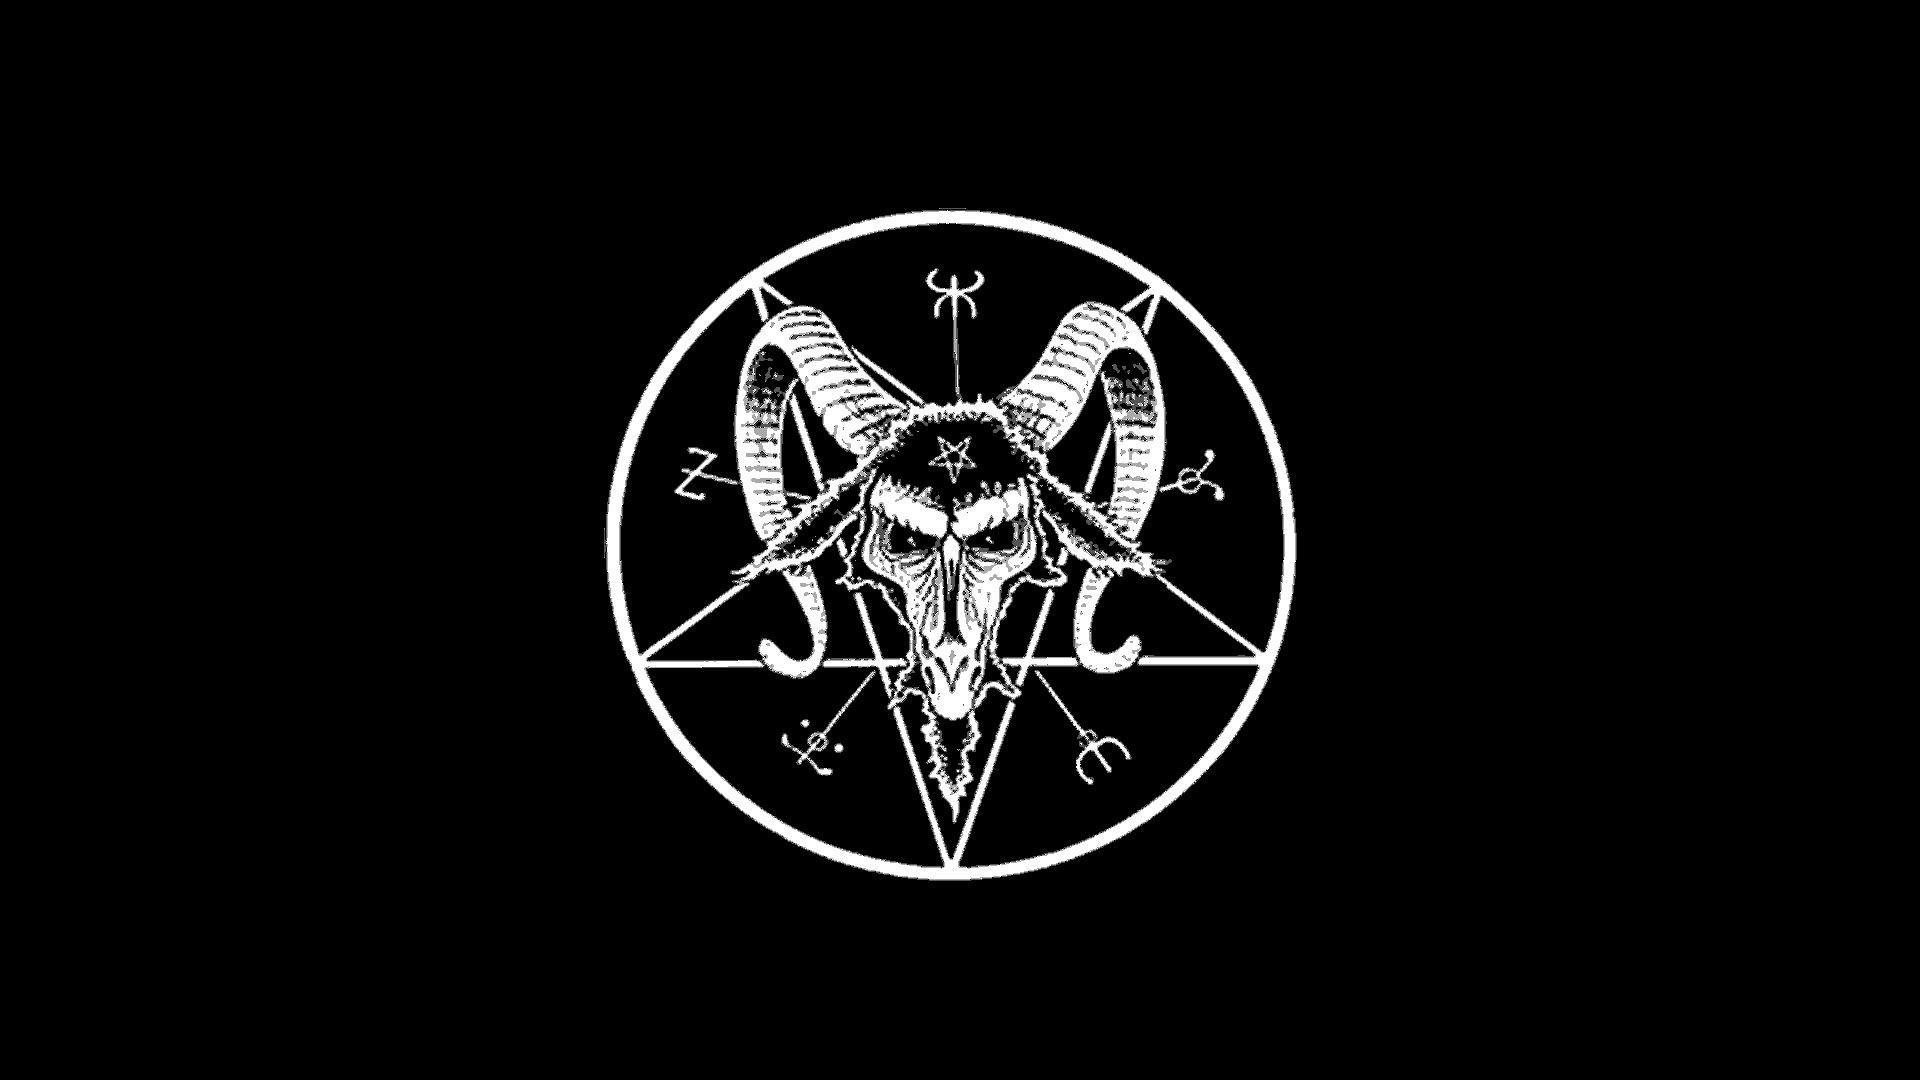 Satanic Wallpapers - Top Những Hình Ảnh Đẹp